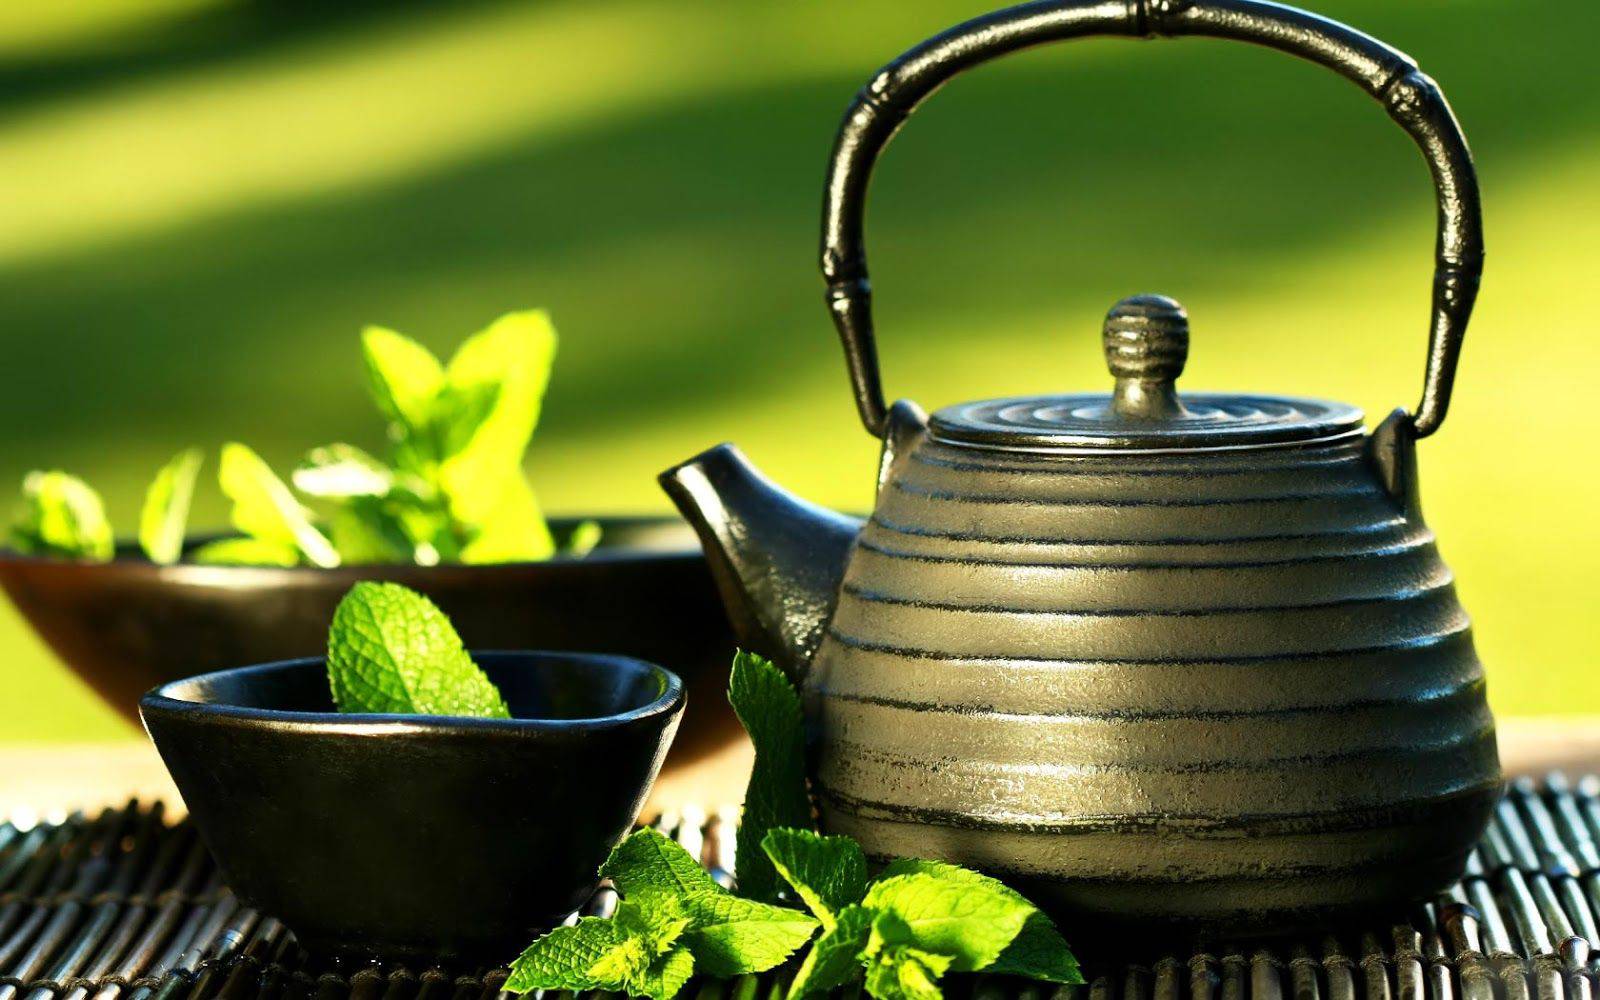 Trà xanh có chứa các chất chống ôxy hóa và catechin, trà xanh có thể giúp ngăn ngừa thiệt hại ôxy hóa và nhiễm khuẩn gây nên